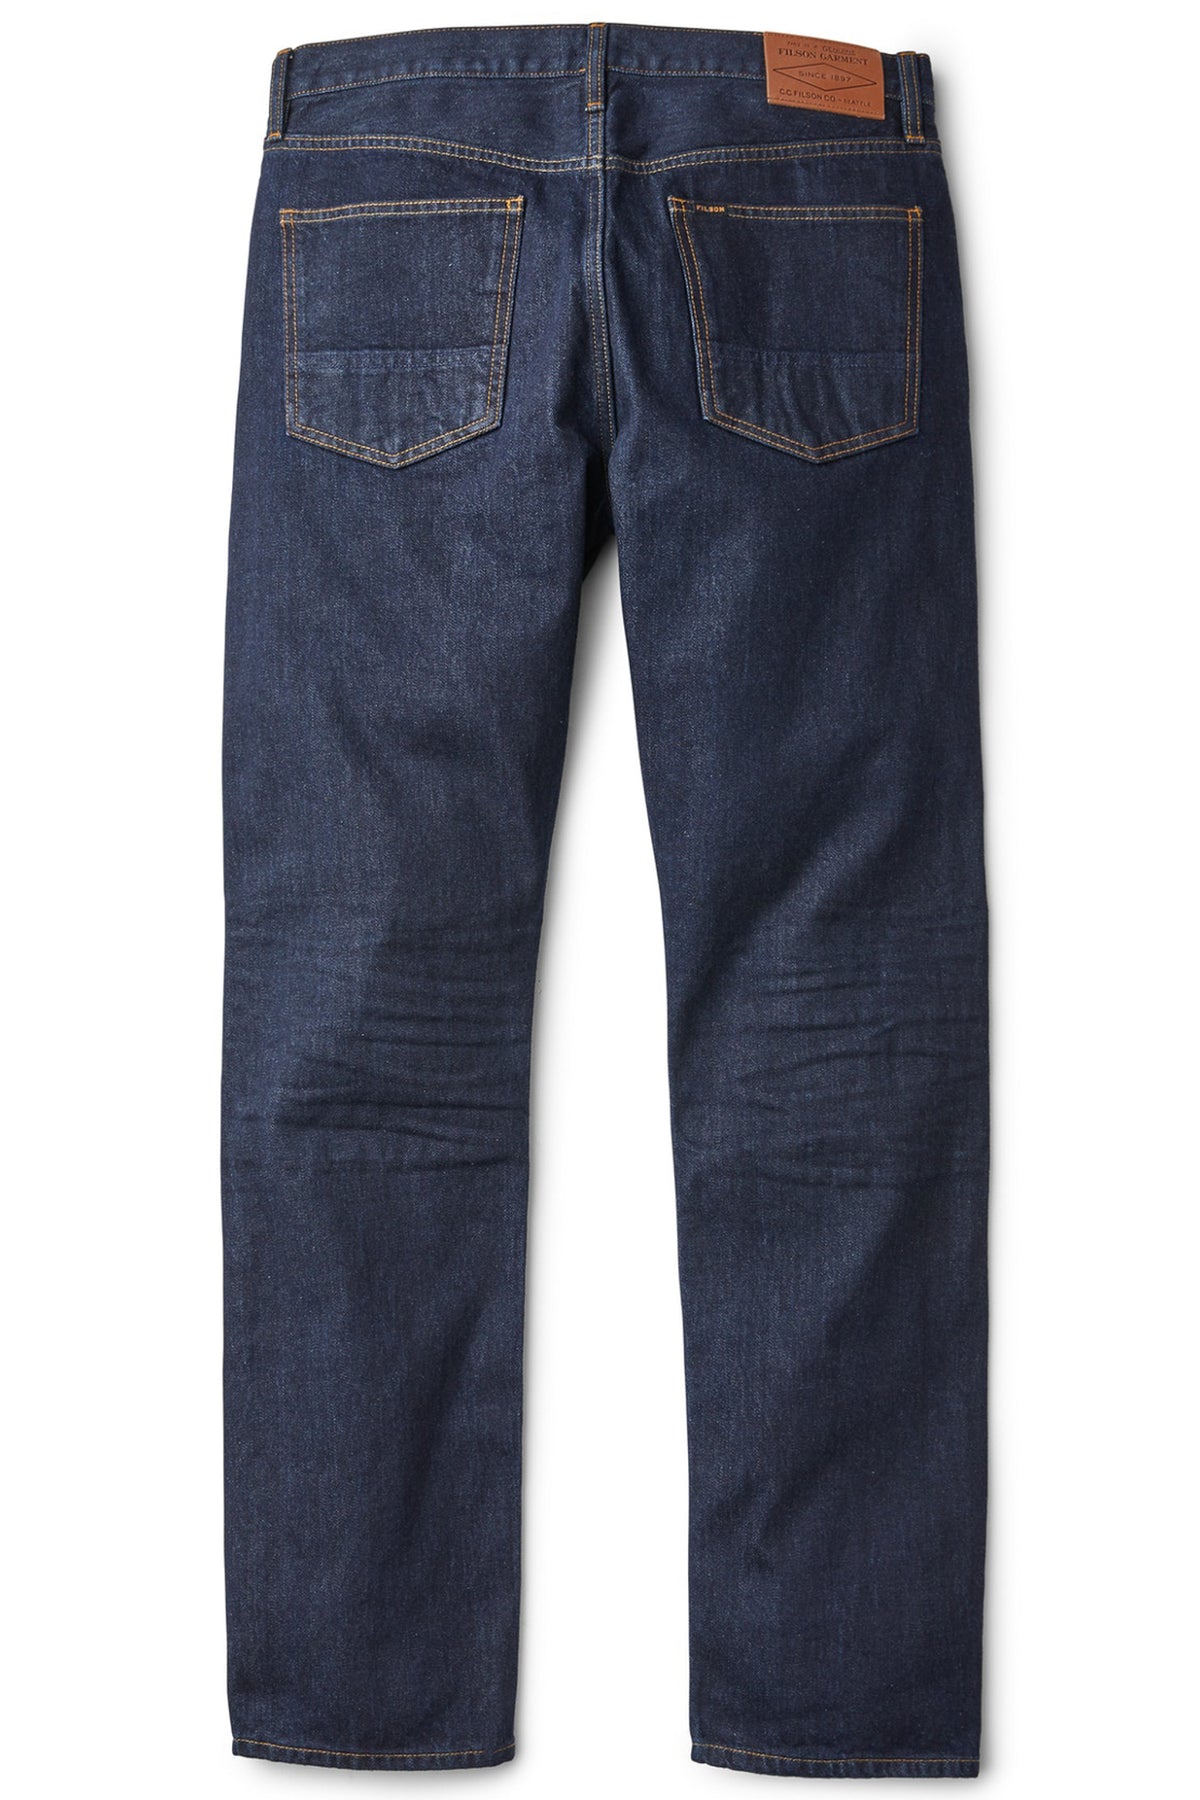 Filson  Rail-Splitter Jeans - Rinse Indigo - Men's – Montana